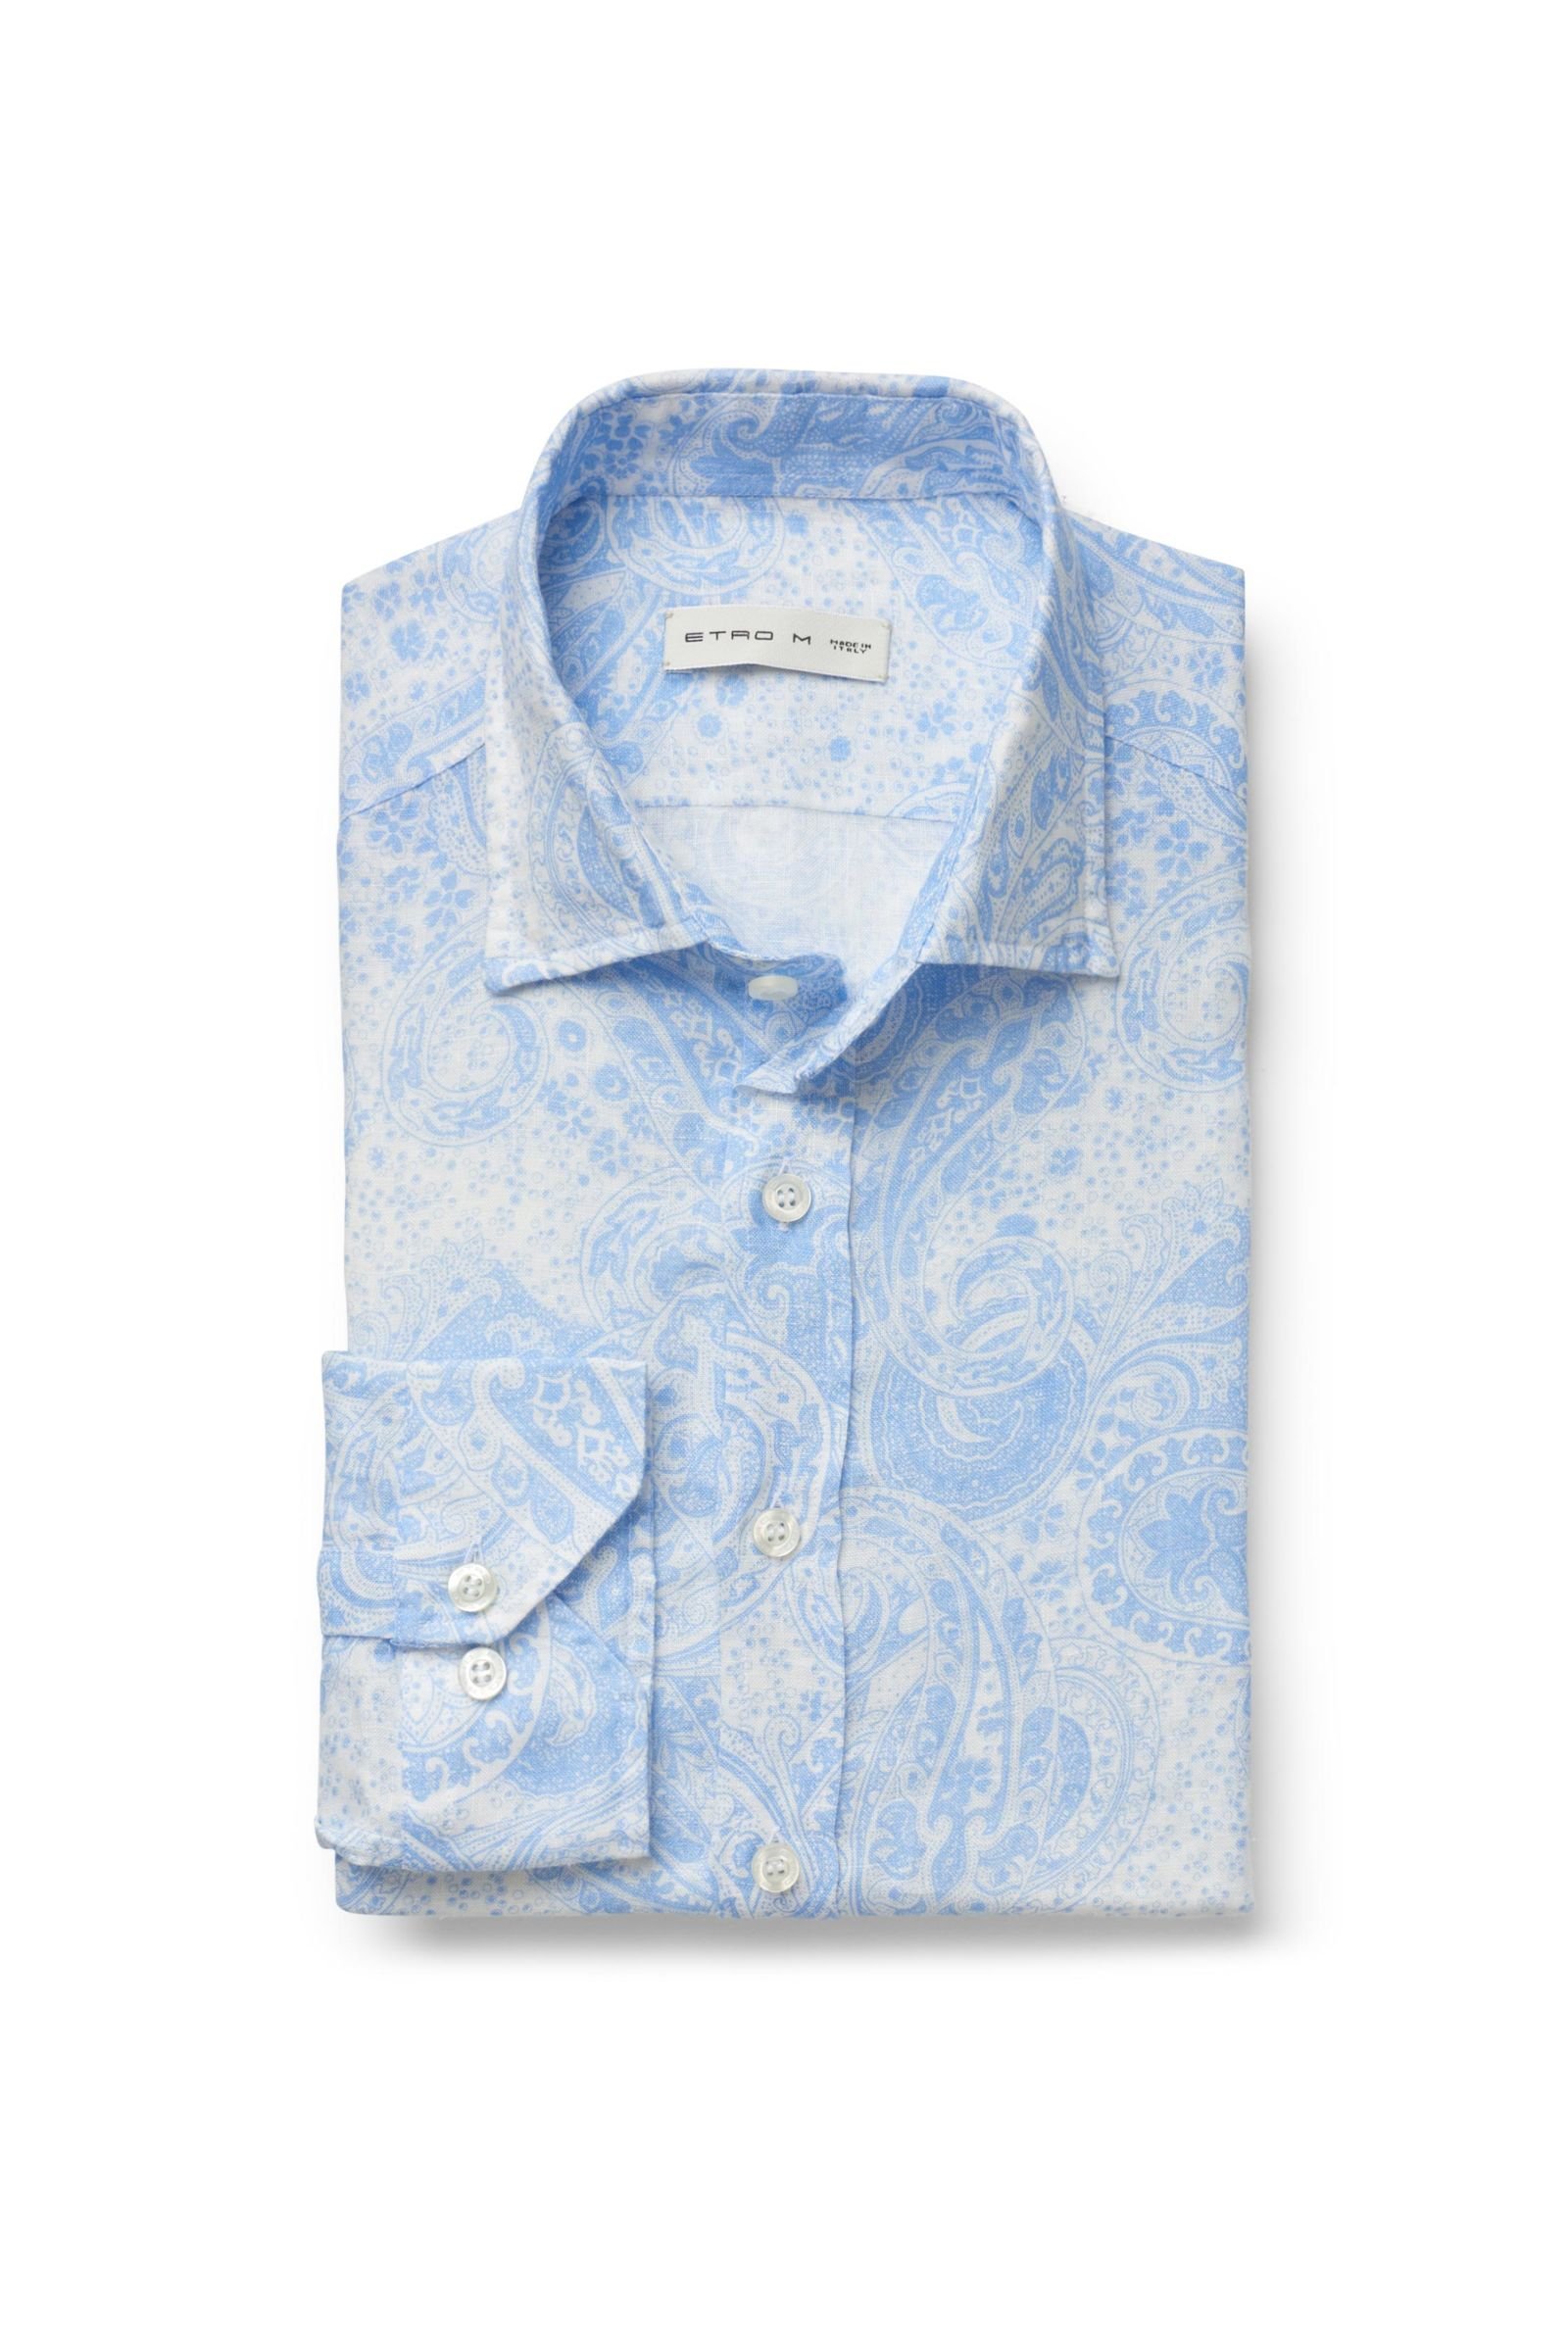 Linen shirt narrow collar light blue patterned